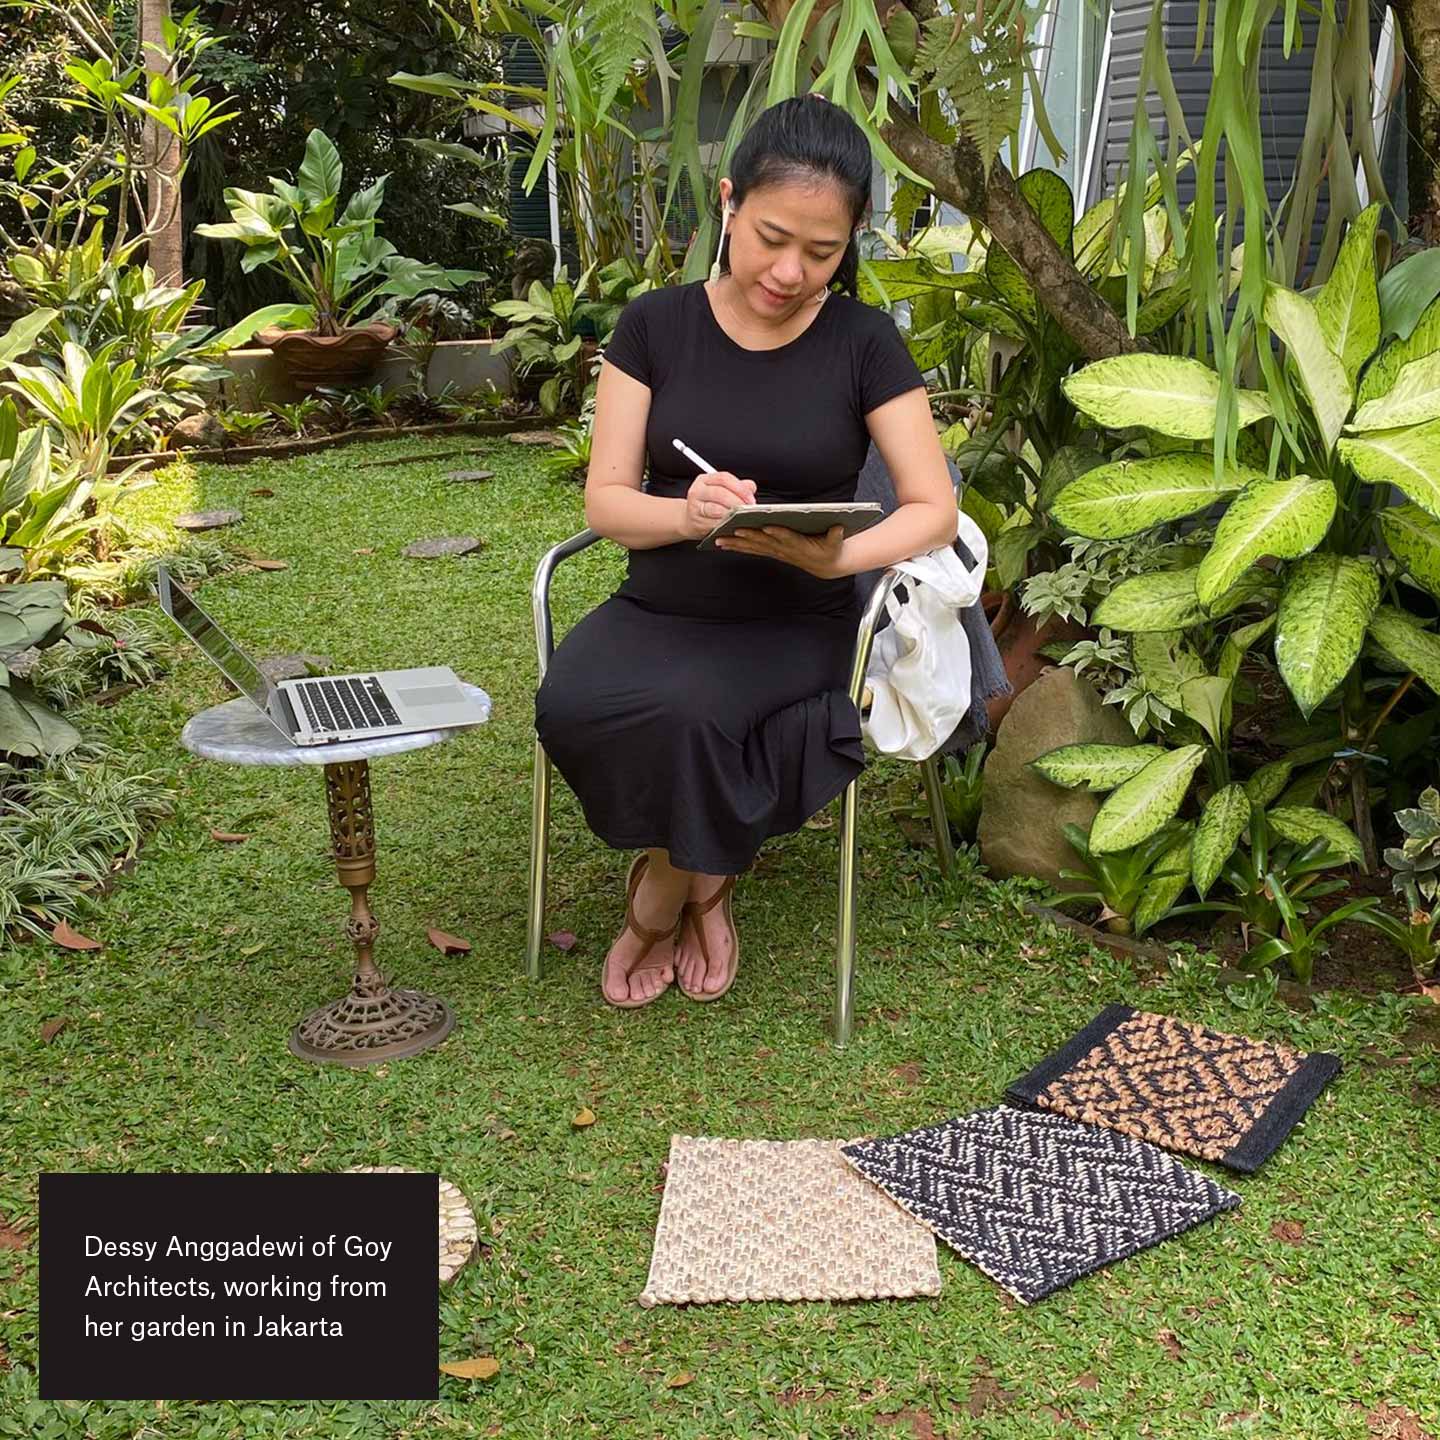 Dessy Anggadewi z Goy Architects, pracująca w swoim ogrodzie w Dżakarcie